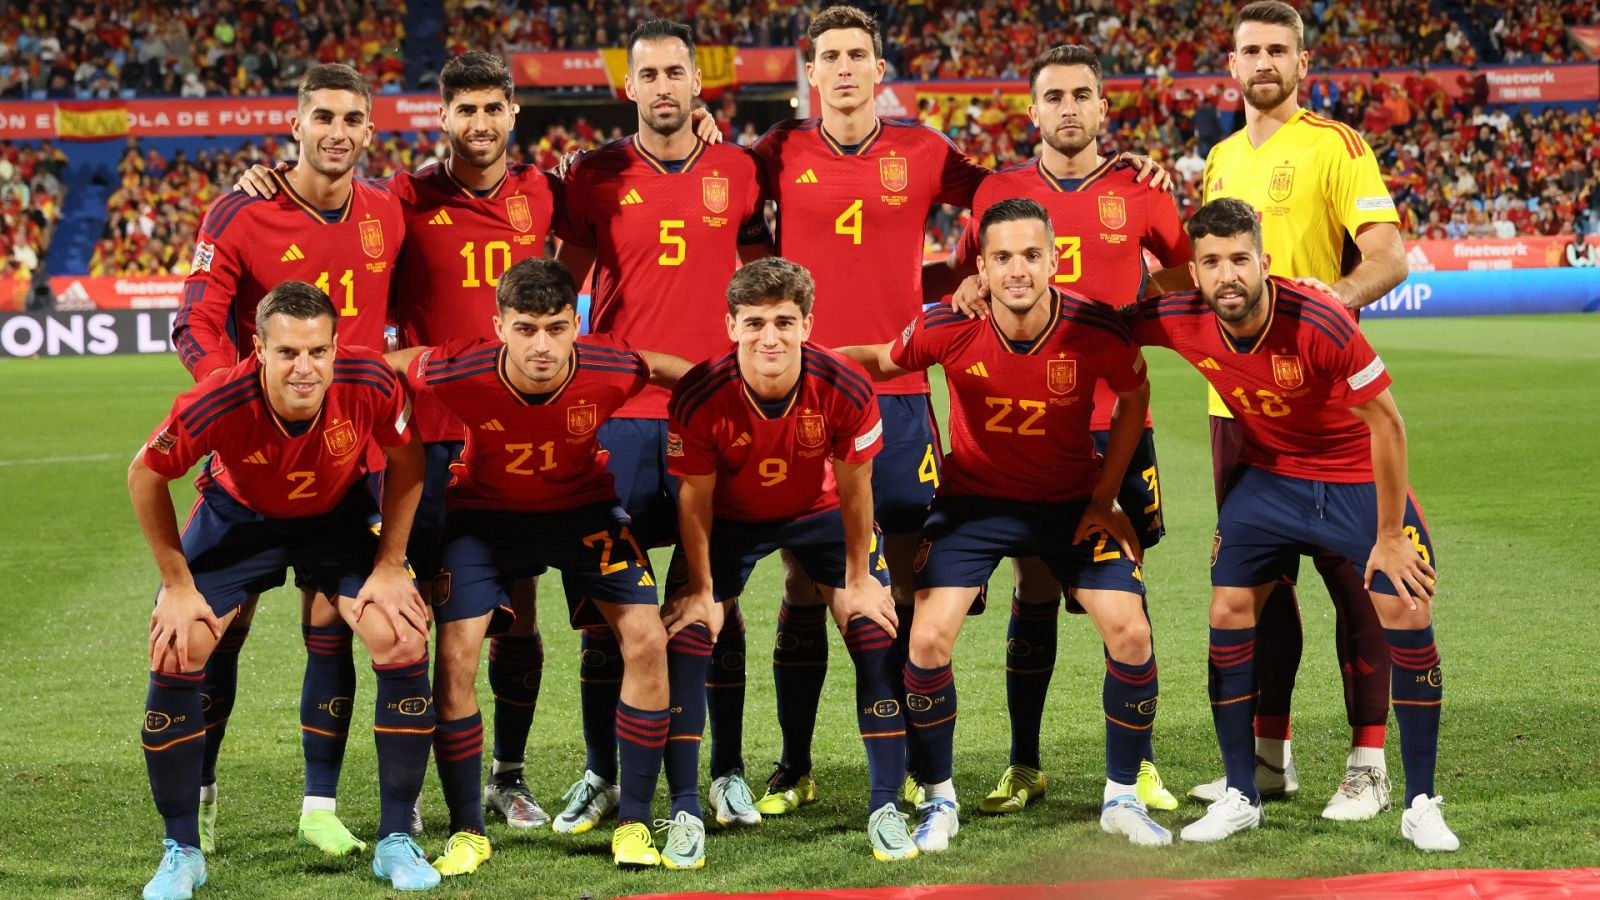 Así es España en Qatar 2022, una nueva generación a confirmar su madurez competitiva